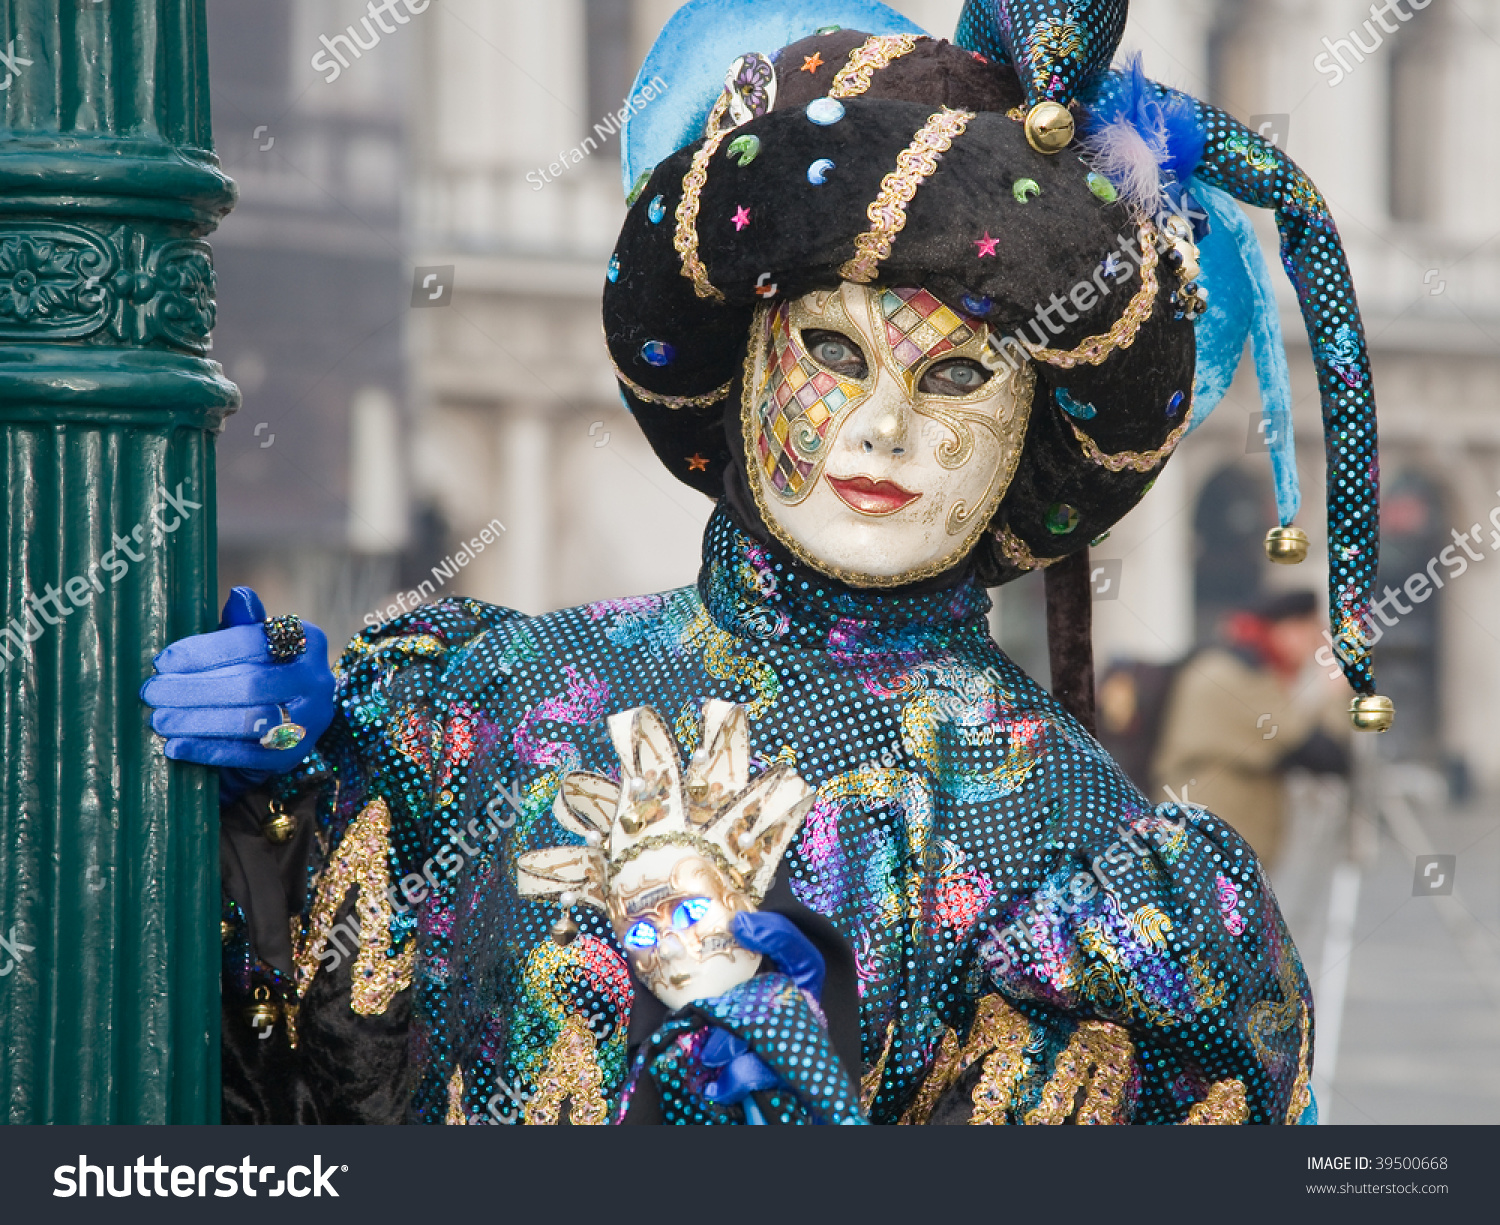 Person Jester Costume Venice Carnival Stock Photo 39500668 - Shutterstock